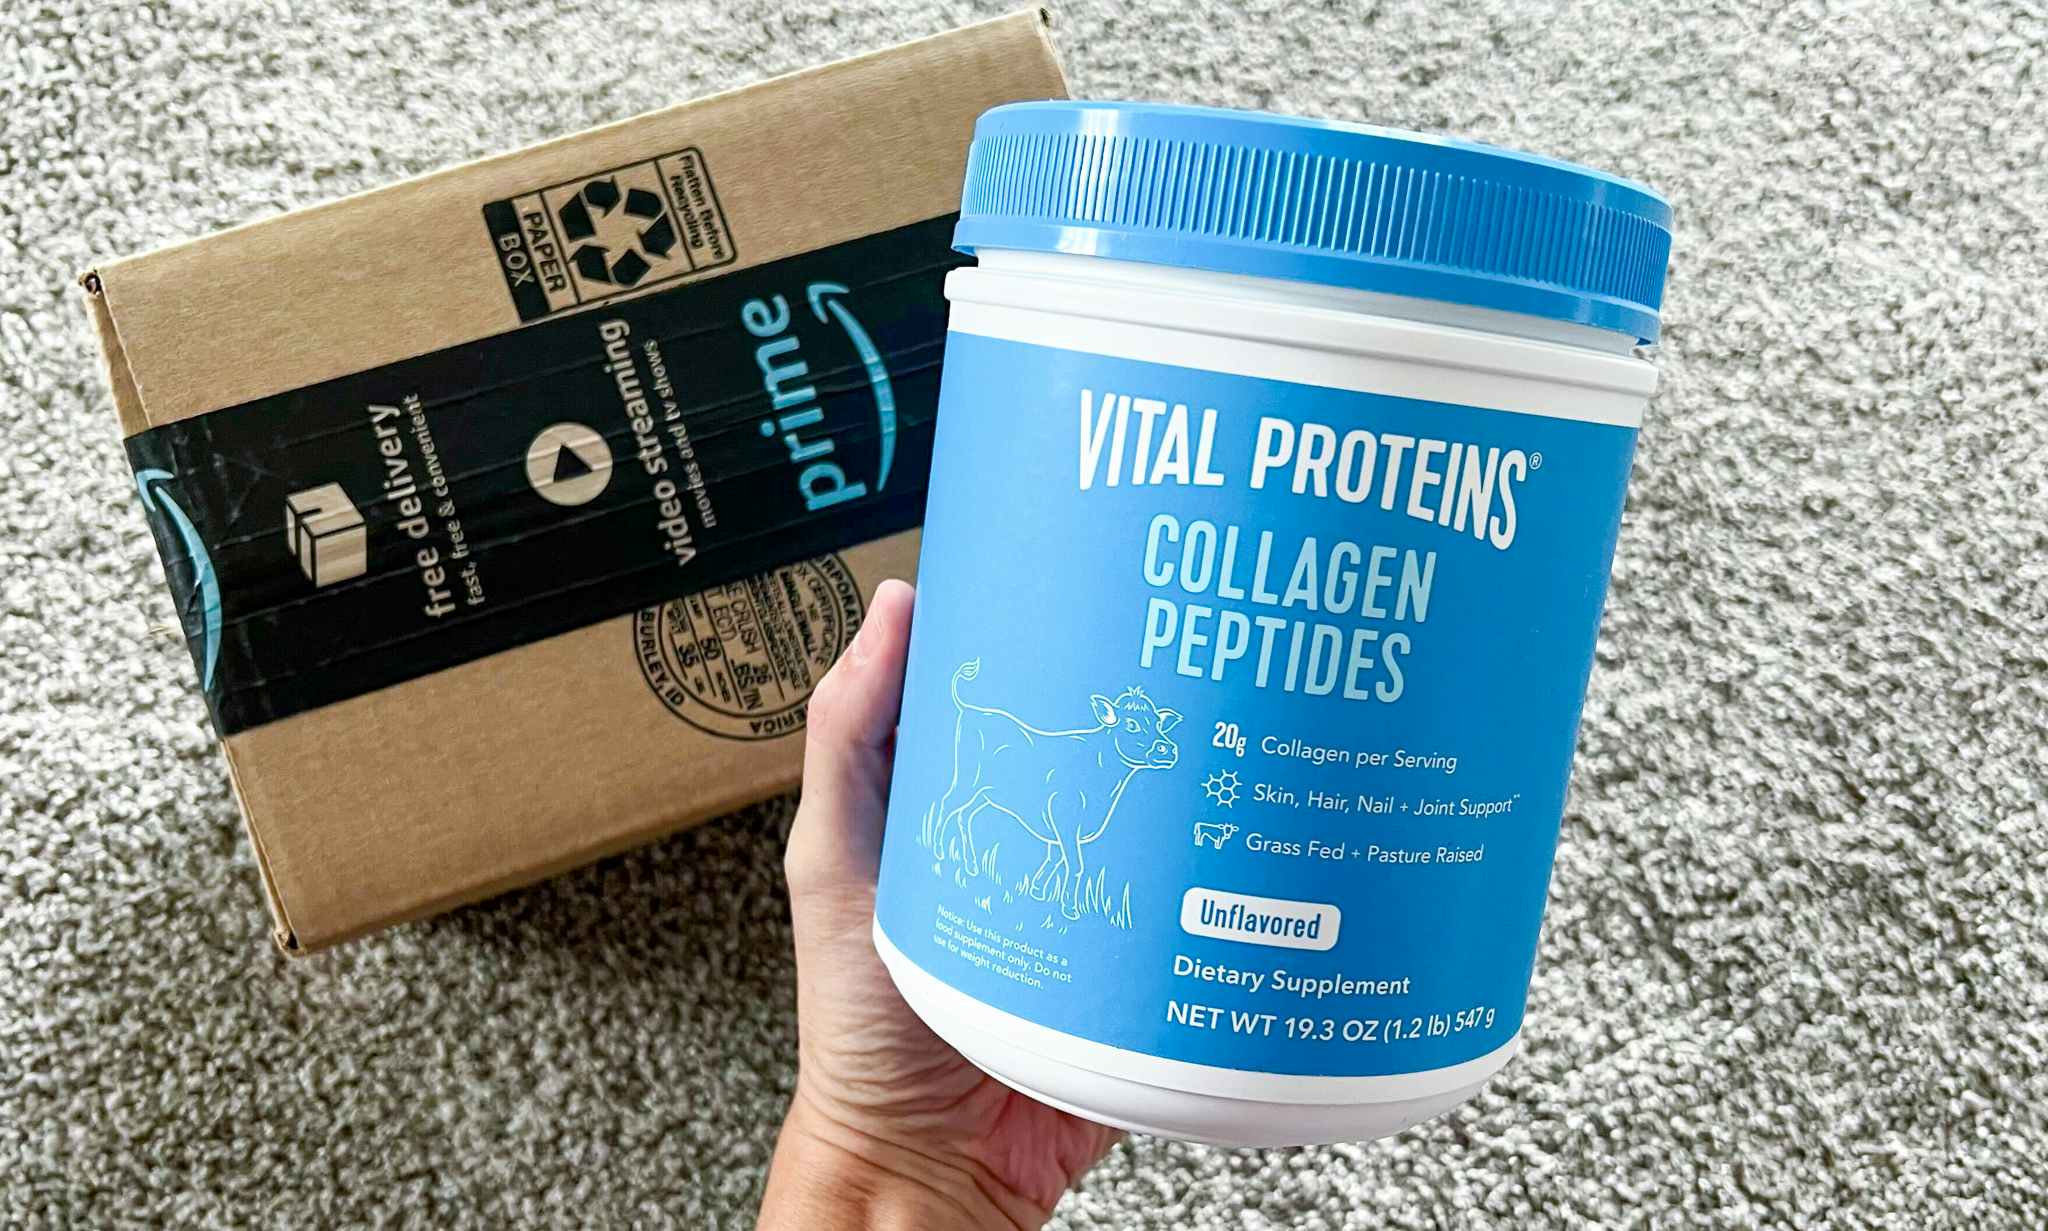 Vital Proteins Collagen Peptides Powder, $29.52 on Amazon (Reg. $47)